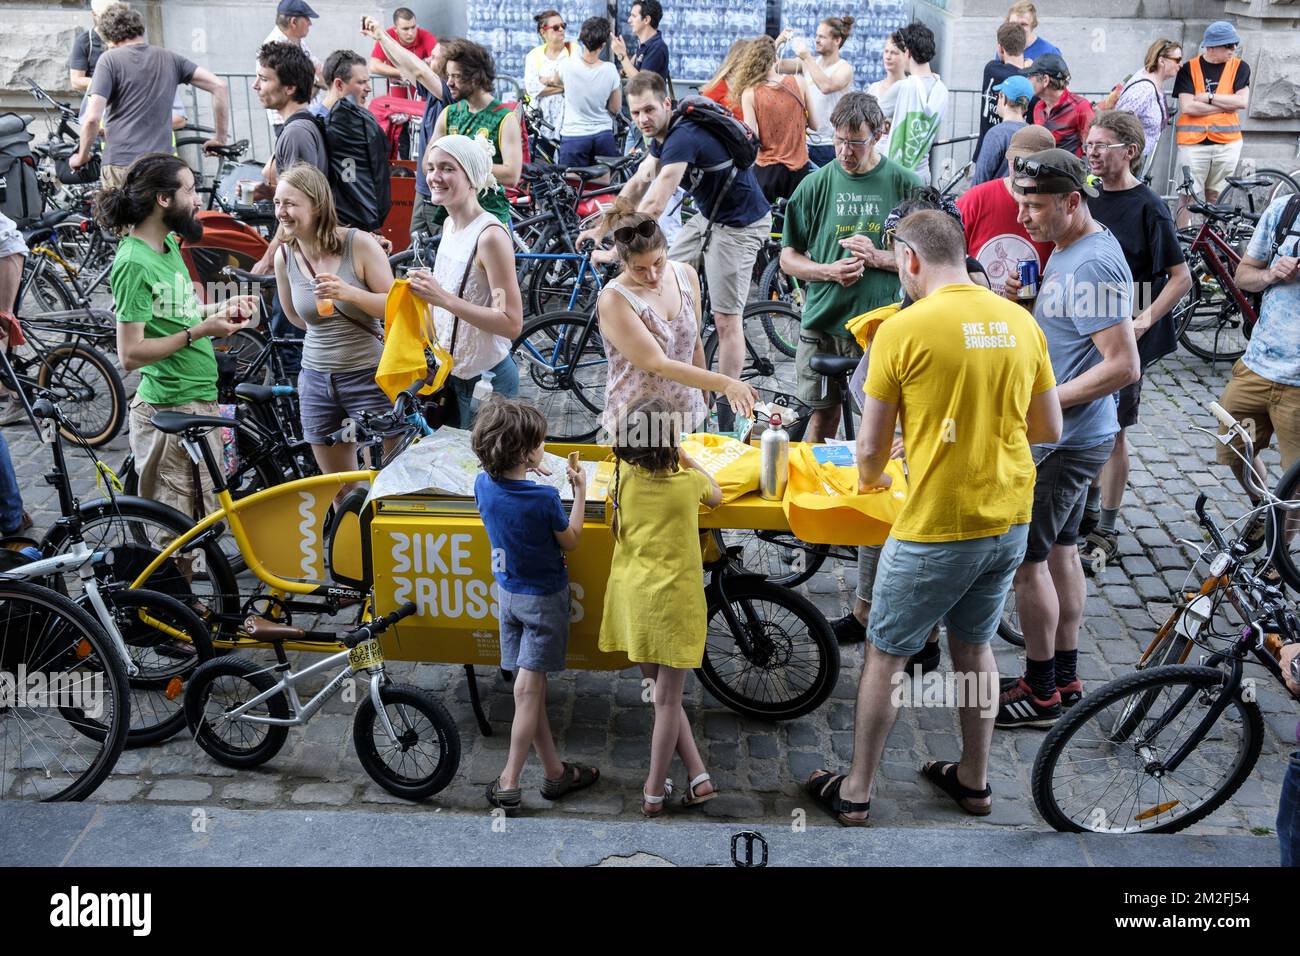 les cyclistes venus de touche la Belgique célébrent les 20 ans de la touche première masse critique de la capitale. Le peloton se retouve dans le parc du Cinquantenaire | dans le Parc du jubileum; le cycliste assure les 20 ans de commémoration critique de masse. Vélo pour Bruxelles 26/05/2018 Banque D'Images